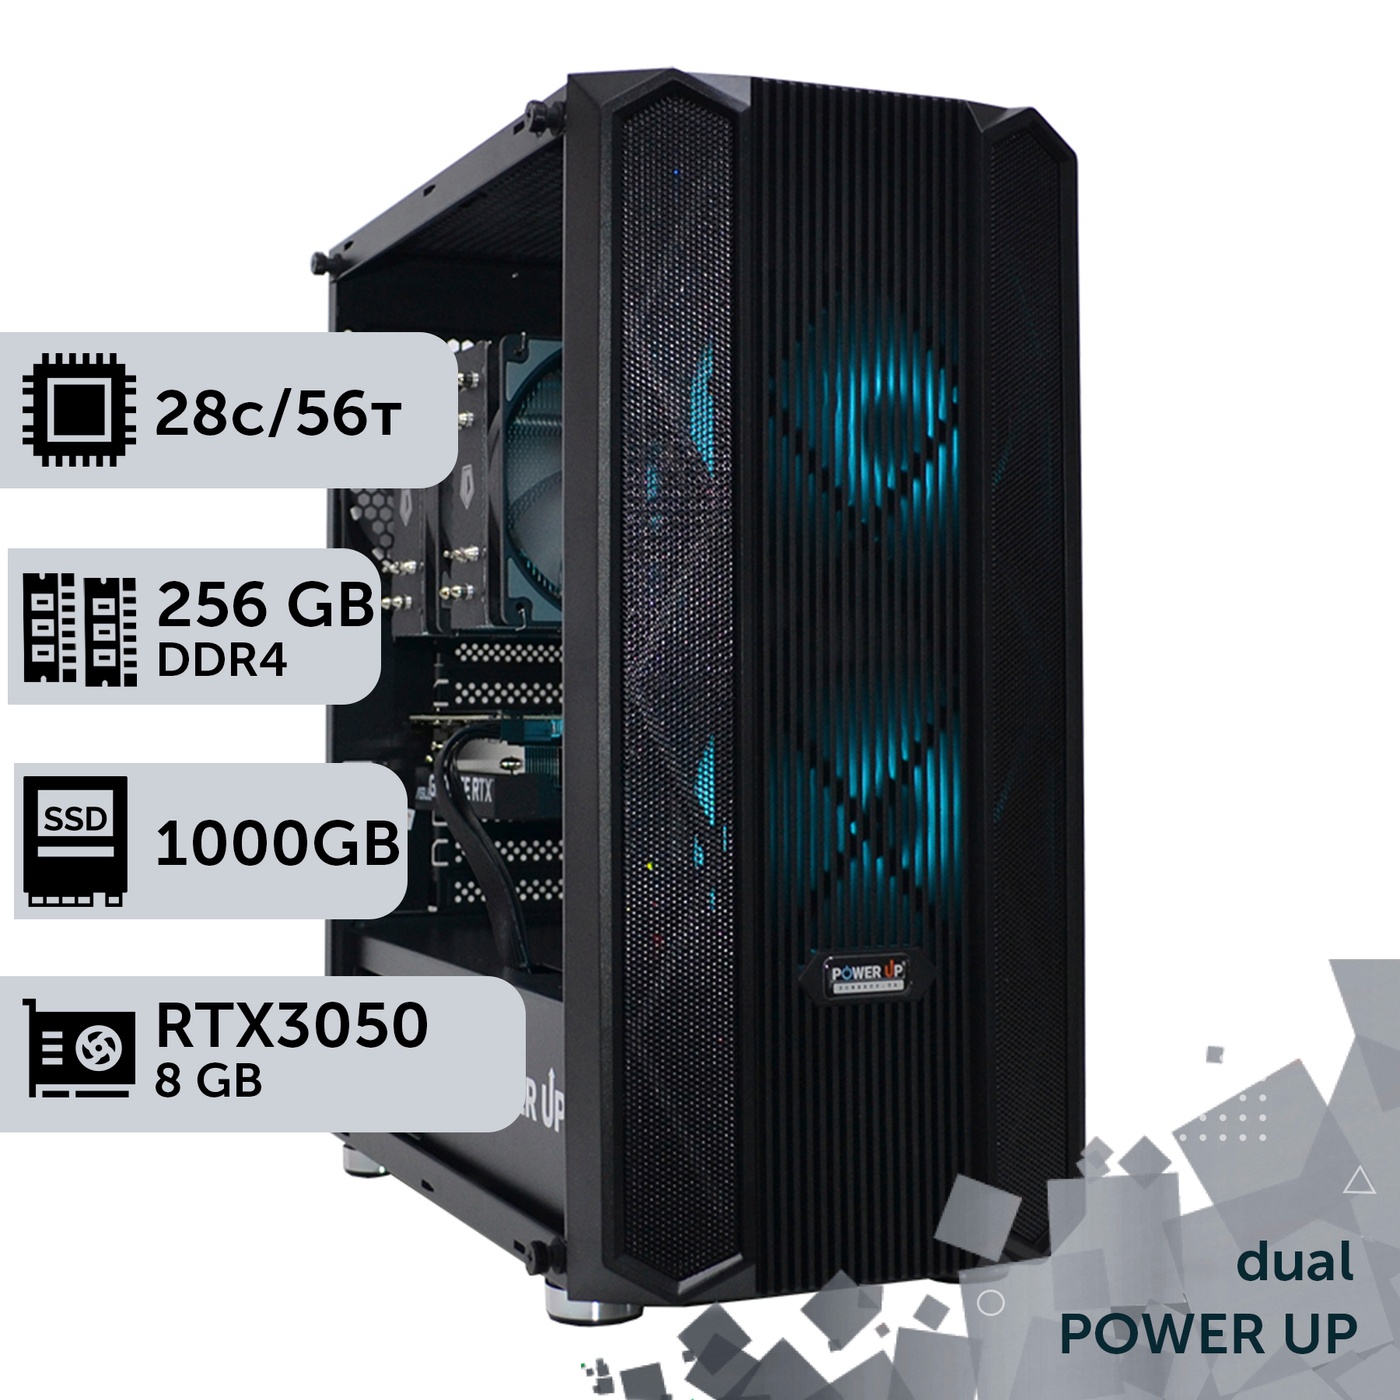 Двухпроцессорная рабочая станция PowerUp #345 Xeon E5 2680 v4 x2/256 GB/SSD 1TB/GeForce RTX 3050 8GB